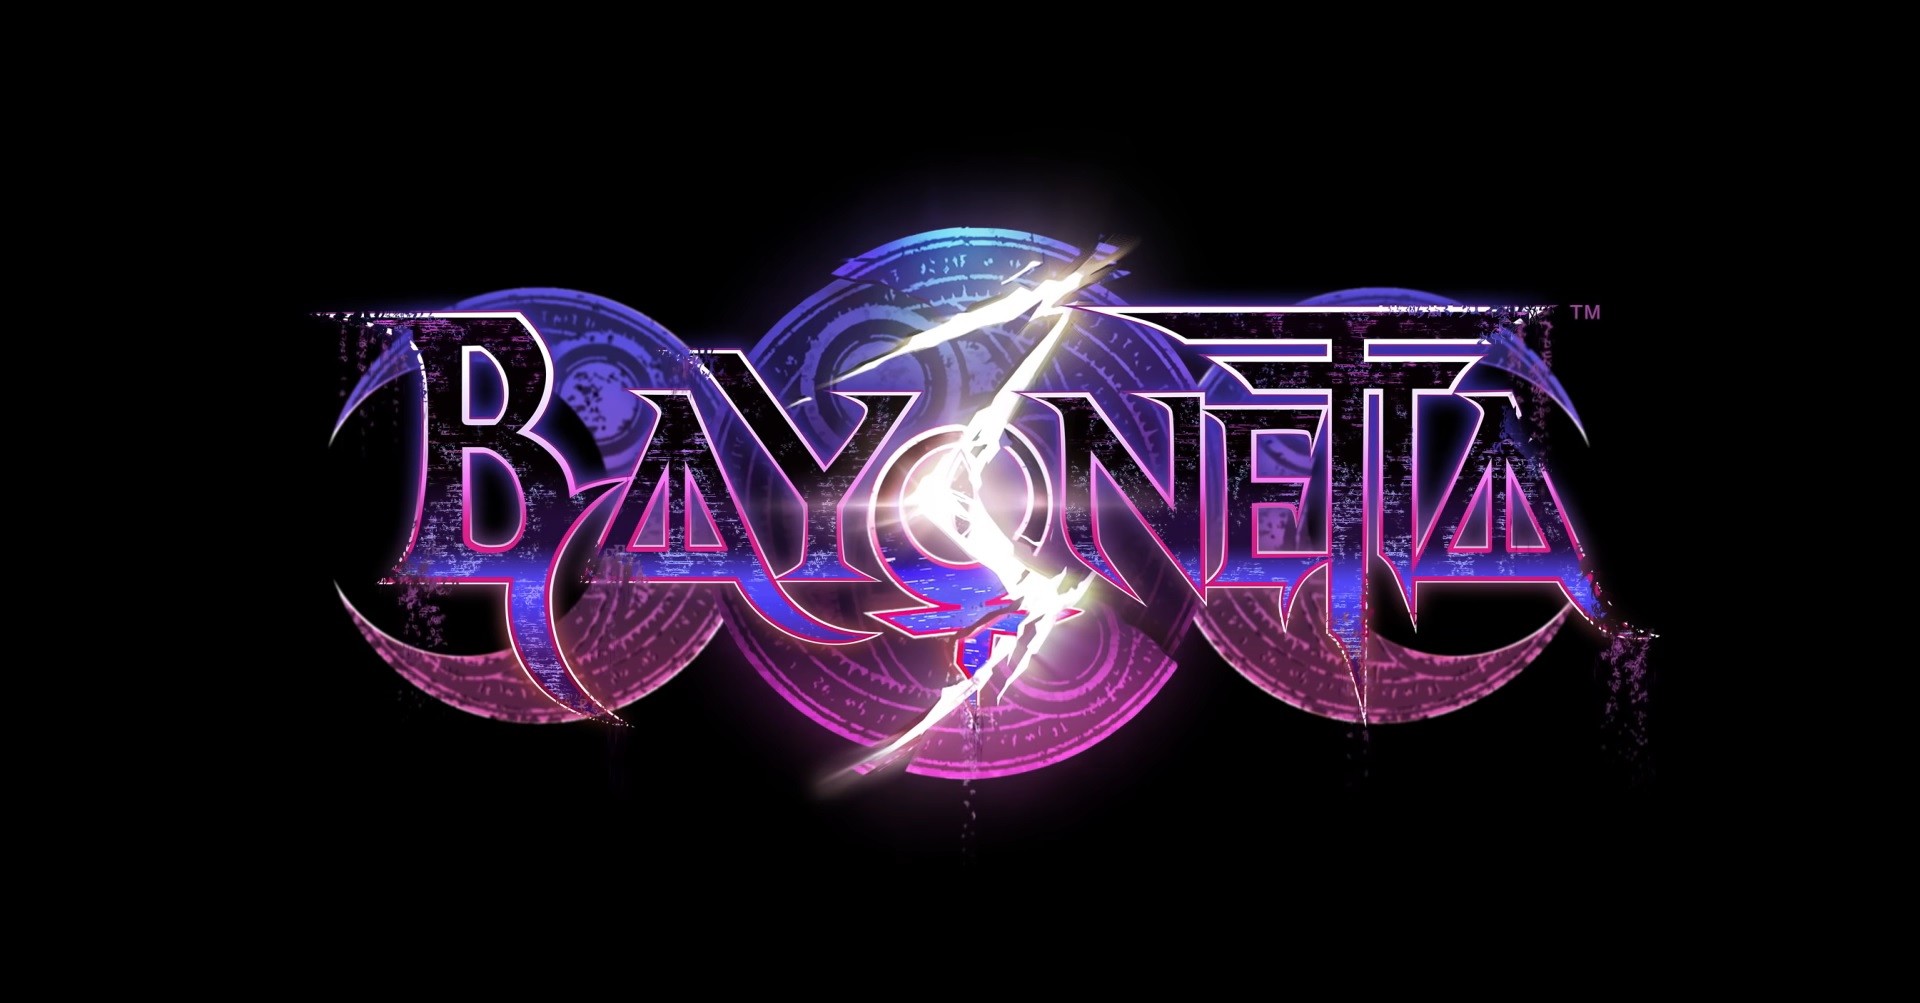 ข้อมูลปีงบประมาณ Nintendo เผยว่า Bayonetta 3 ยังได้เล่นในปี ค.ศ. 2022